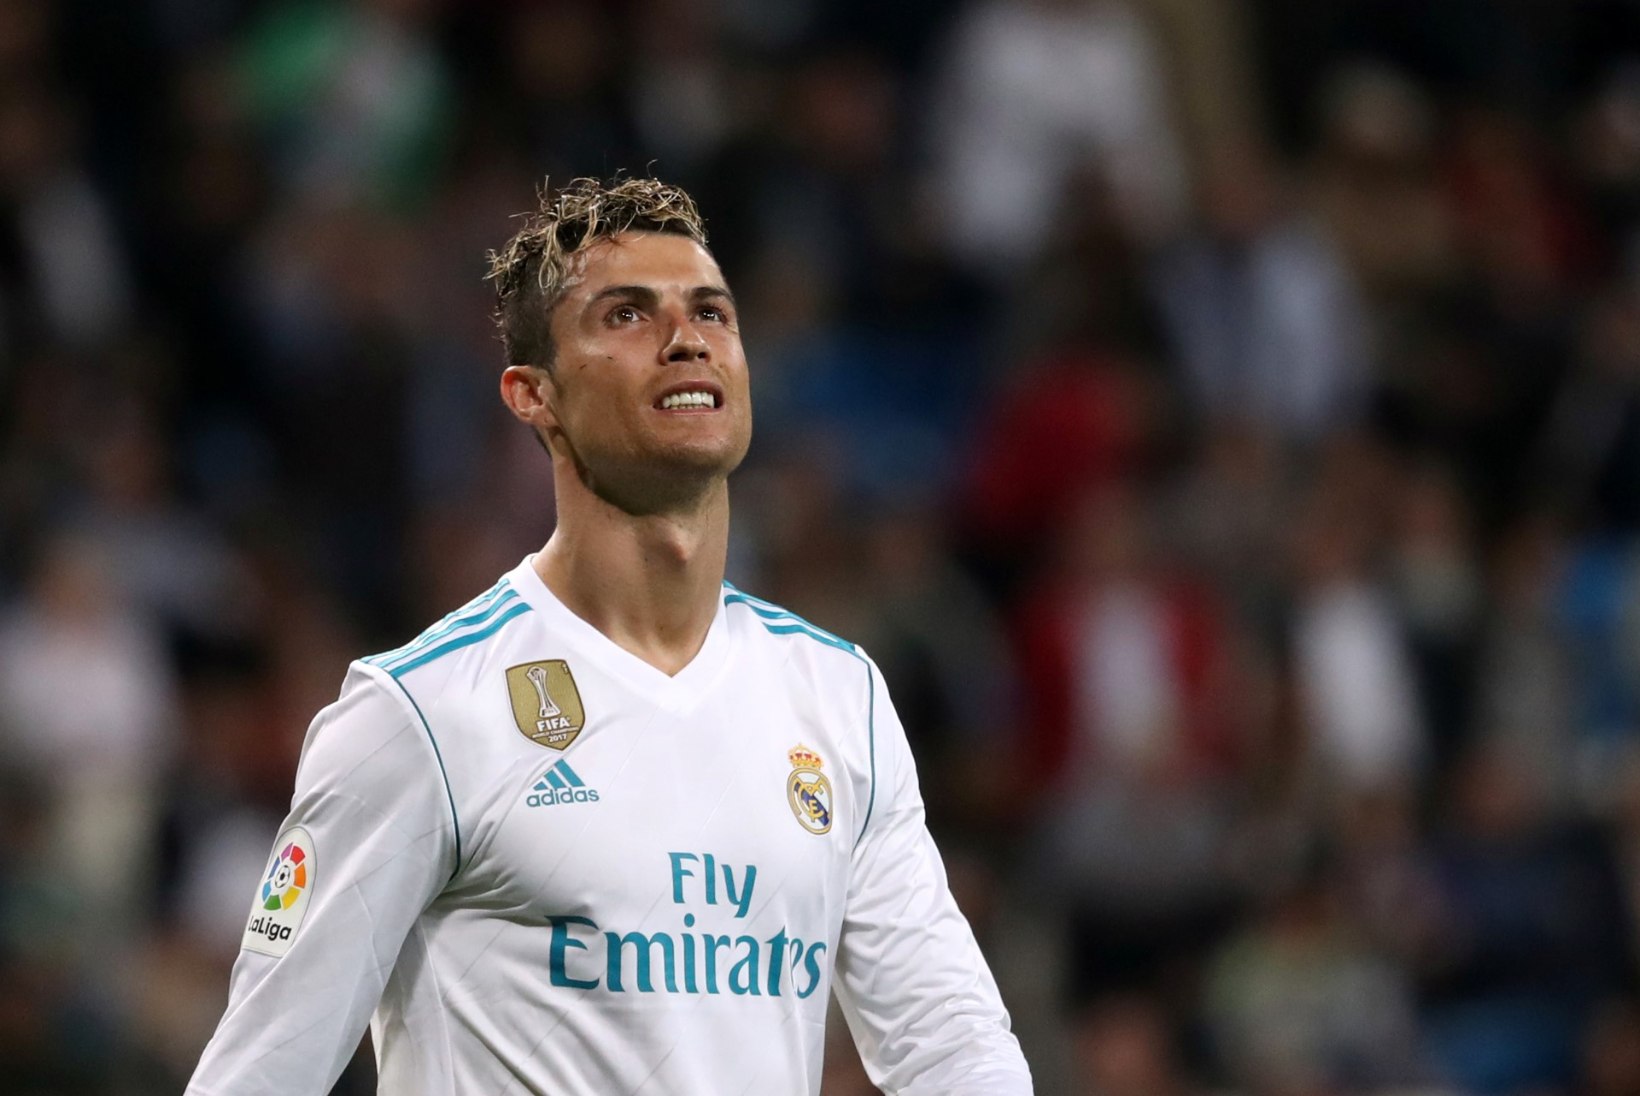 VIDEO | Vaata, kui osavalt Cristiano Ronaldo seekord palli väravasse suskas!